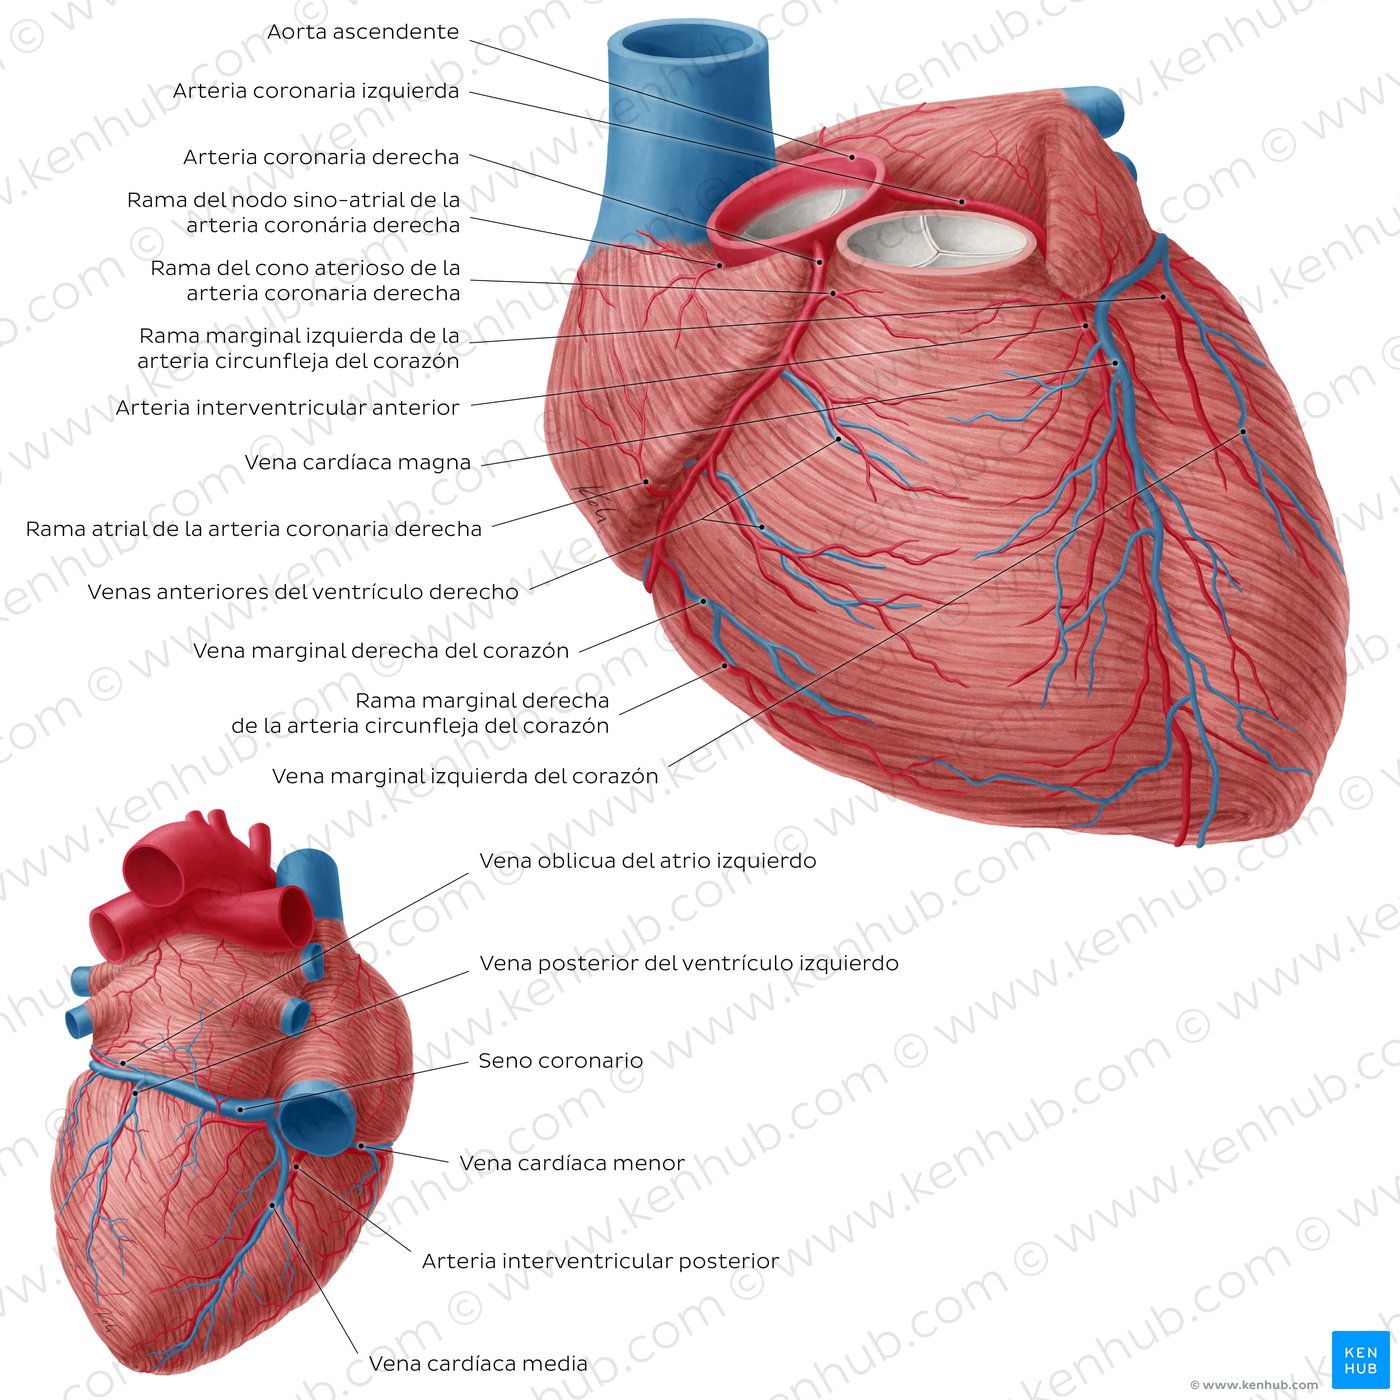 Arterias coronarias y venas cardíacas